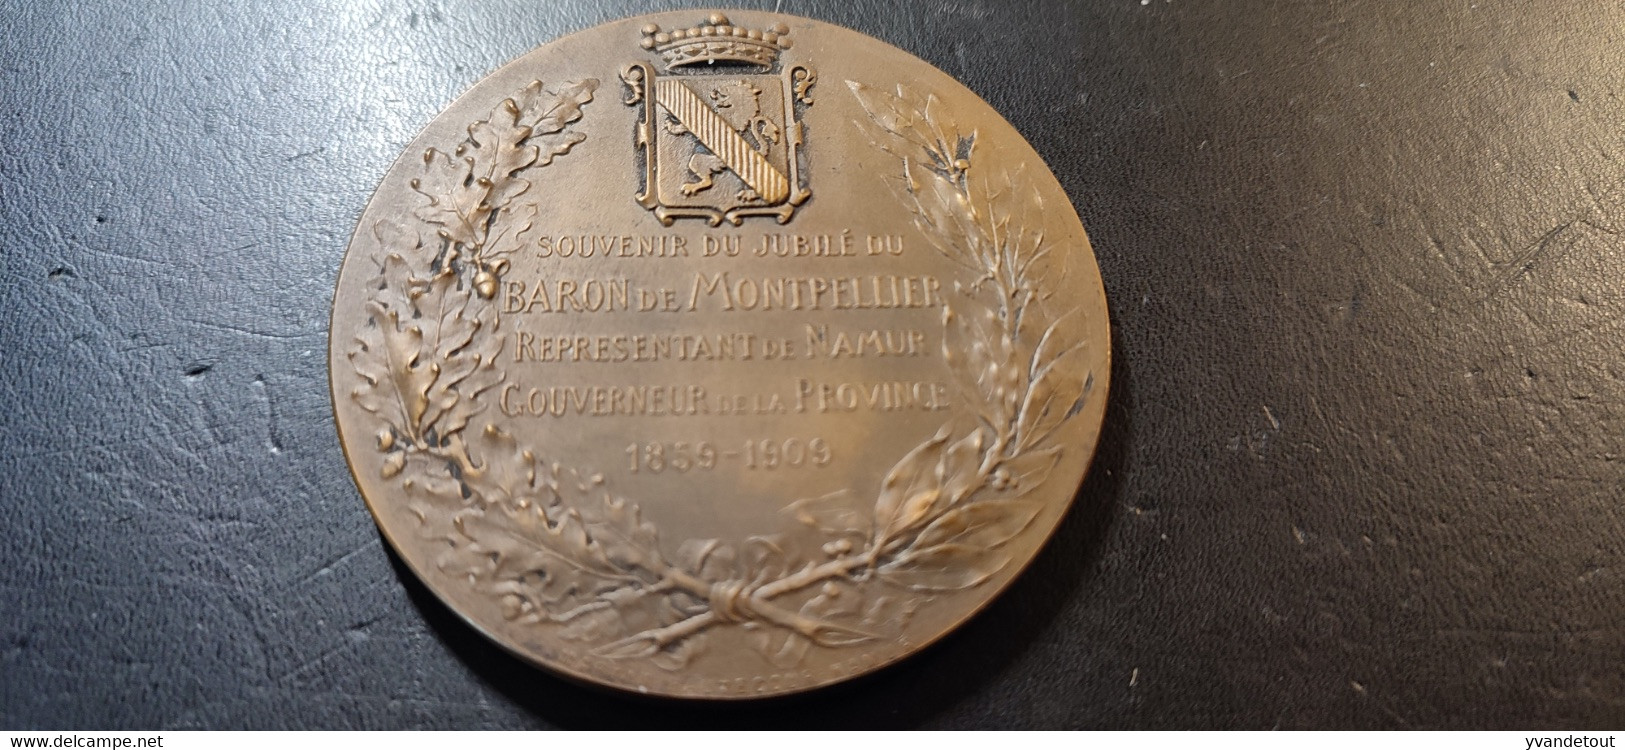 Médaille Souvenir Du Jubilé Du Baron De Montpellier, Représentant De Namur Gouverneur De La Province 1859-1909 - België